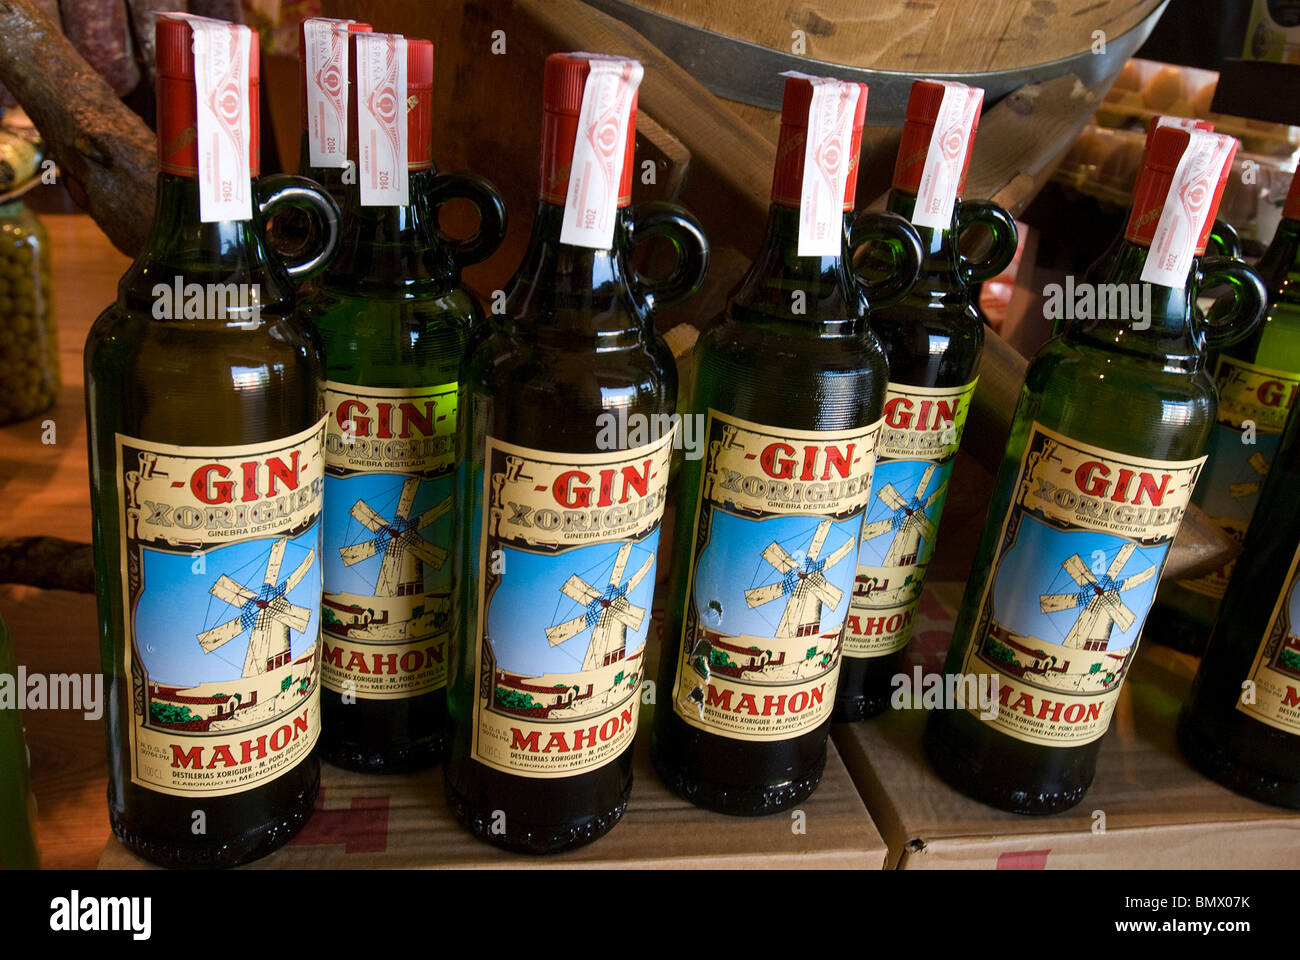 Mahon Gin Bottles, Mahon, Menorca, Balearics, Spain Stock Photo